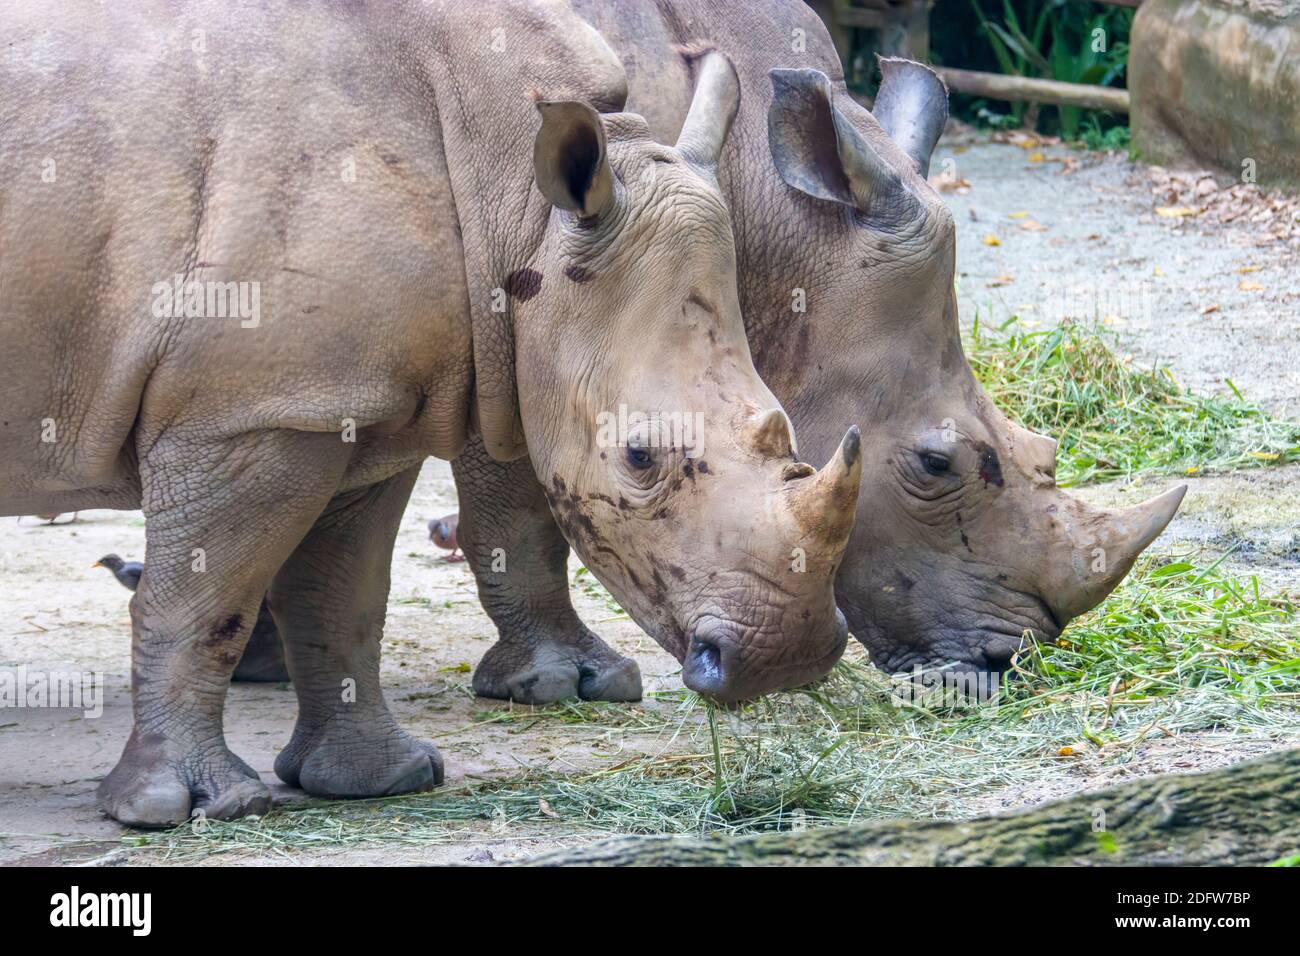 Nouvelle sur ce forum - Page 17 Le-rhinoceros-blanc-ceratotherium-simum-est-la-plus-grande-espece-existante-de-rhinoceros-il-a-une-large-bouche-2dfw7bp